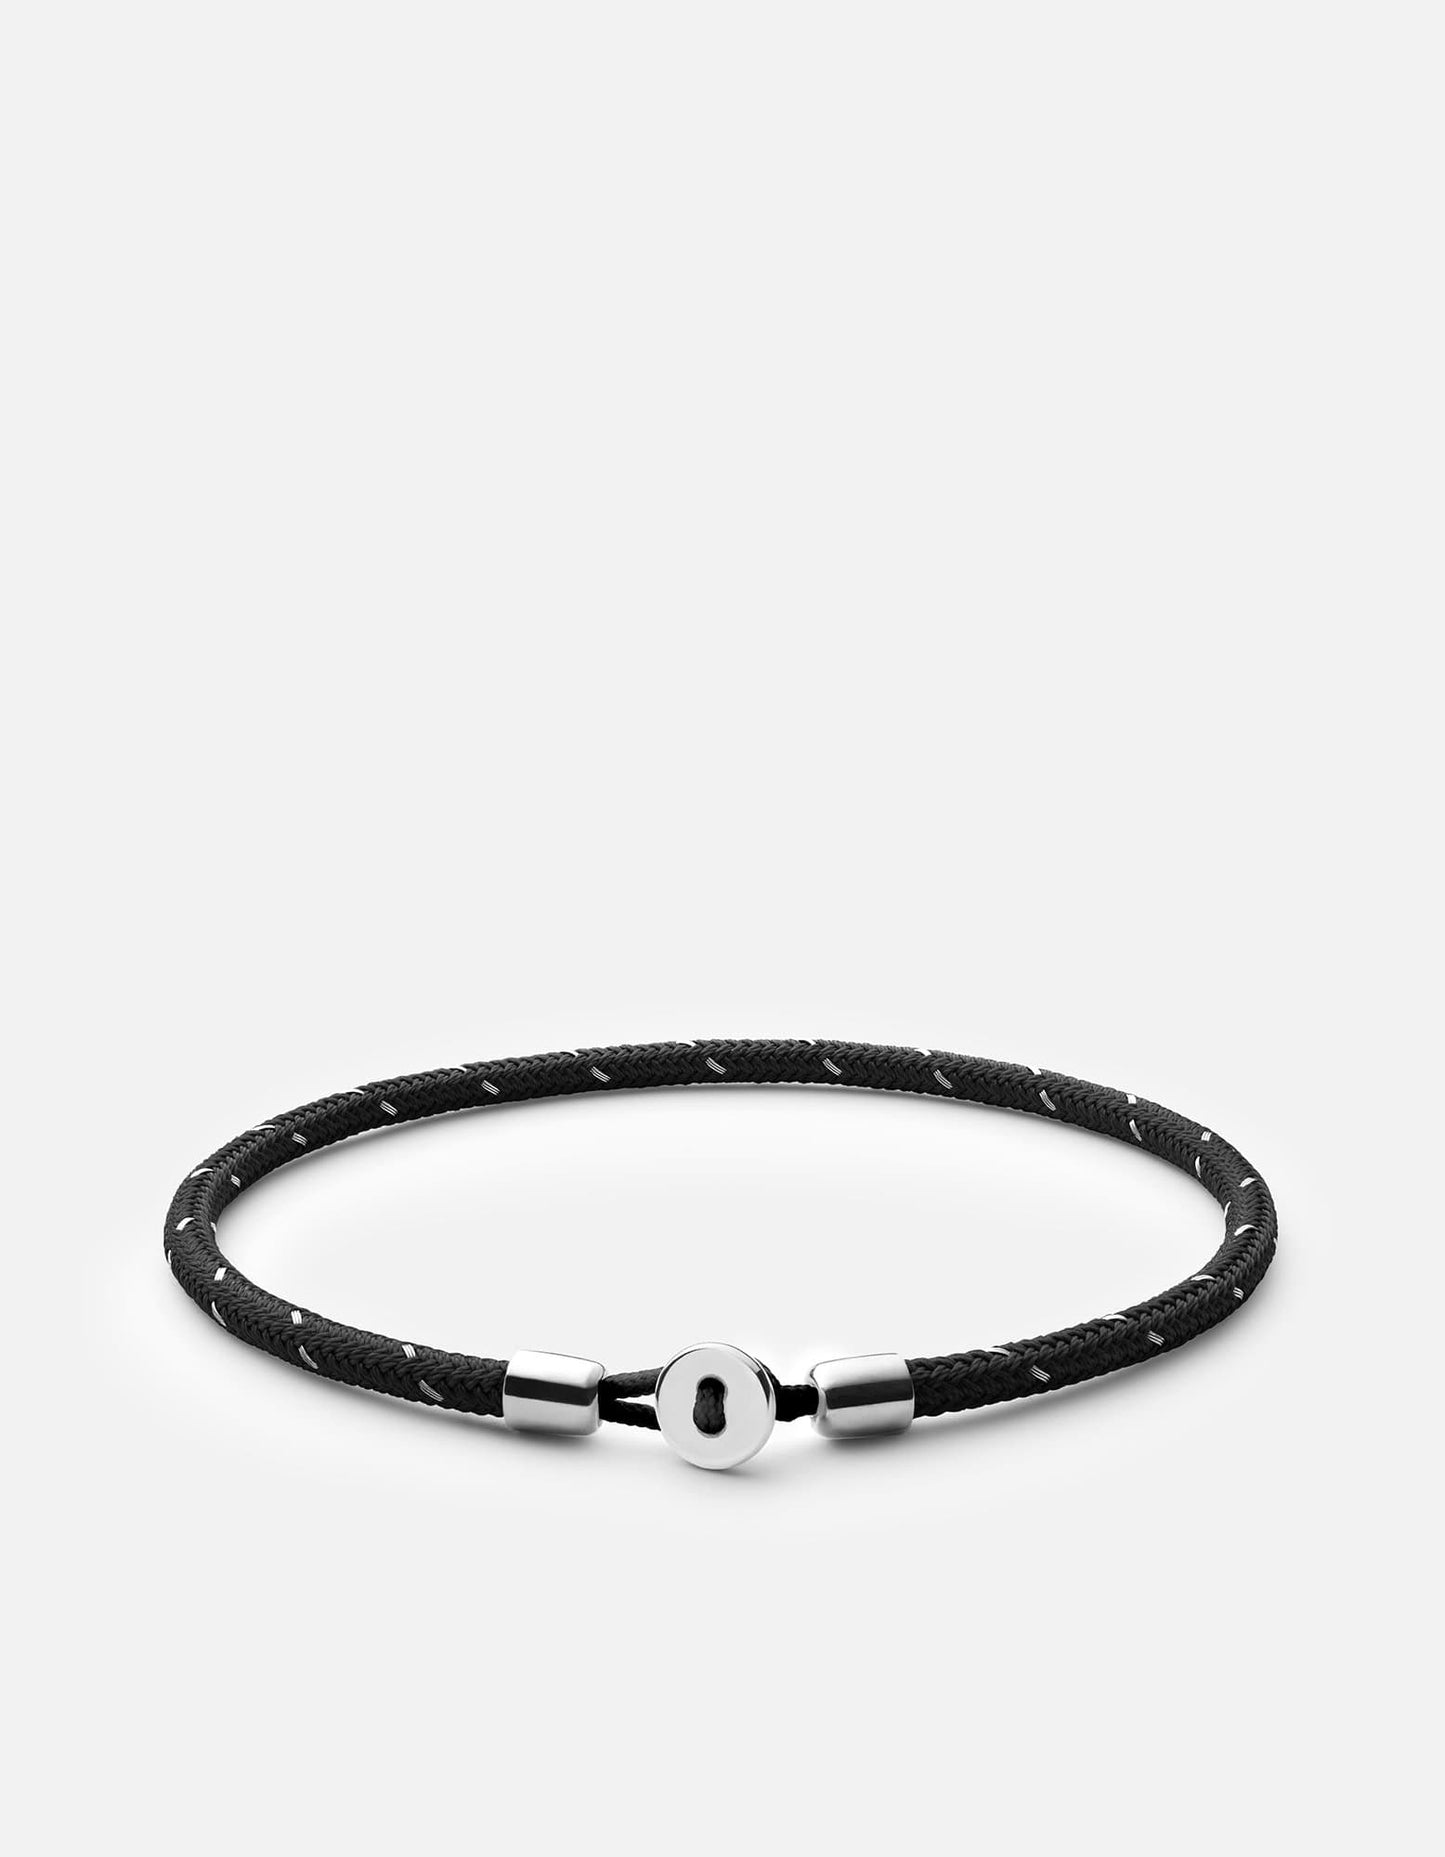 Nexus Rope Bracelet, Sterling Silver